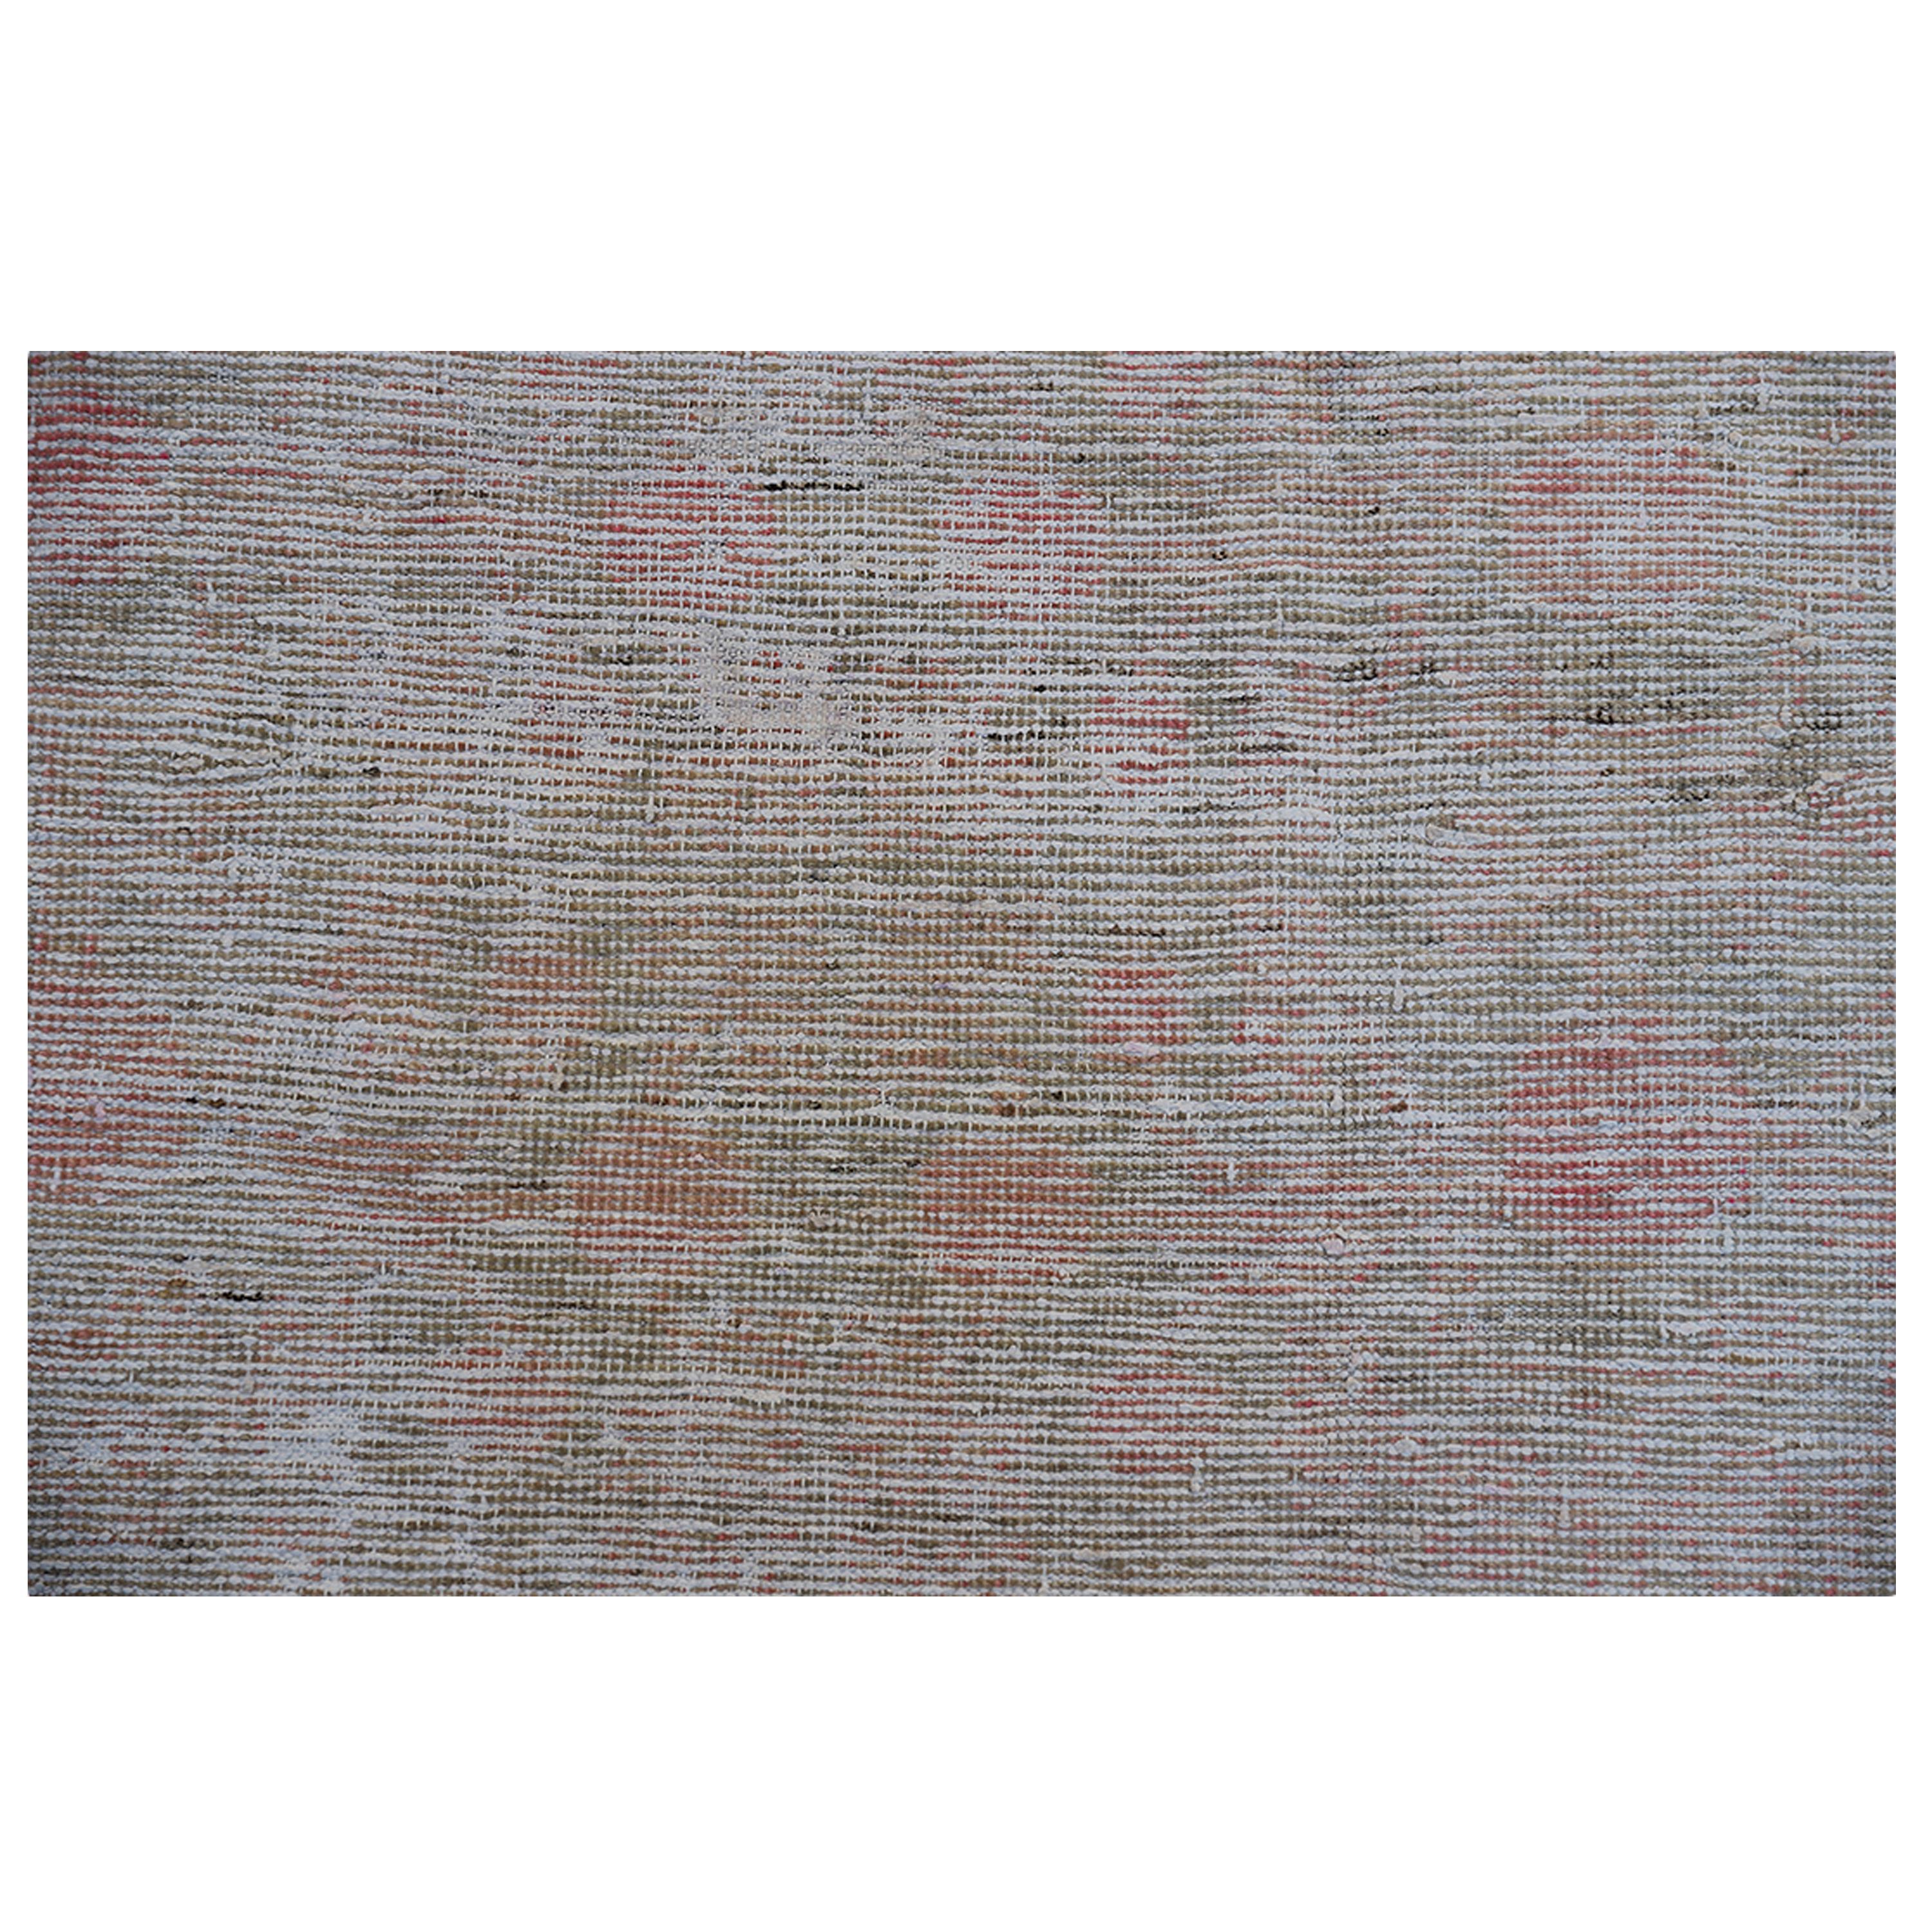 Khotan abc carpet Multicolored Vintage Wool Cotton Blend Rug - 4' x 7'2